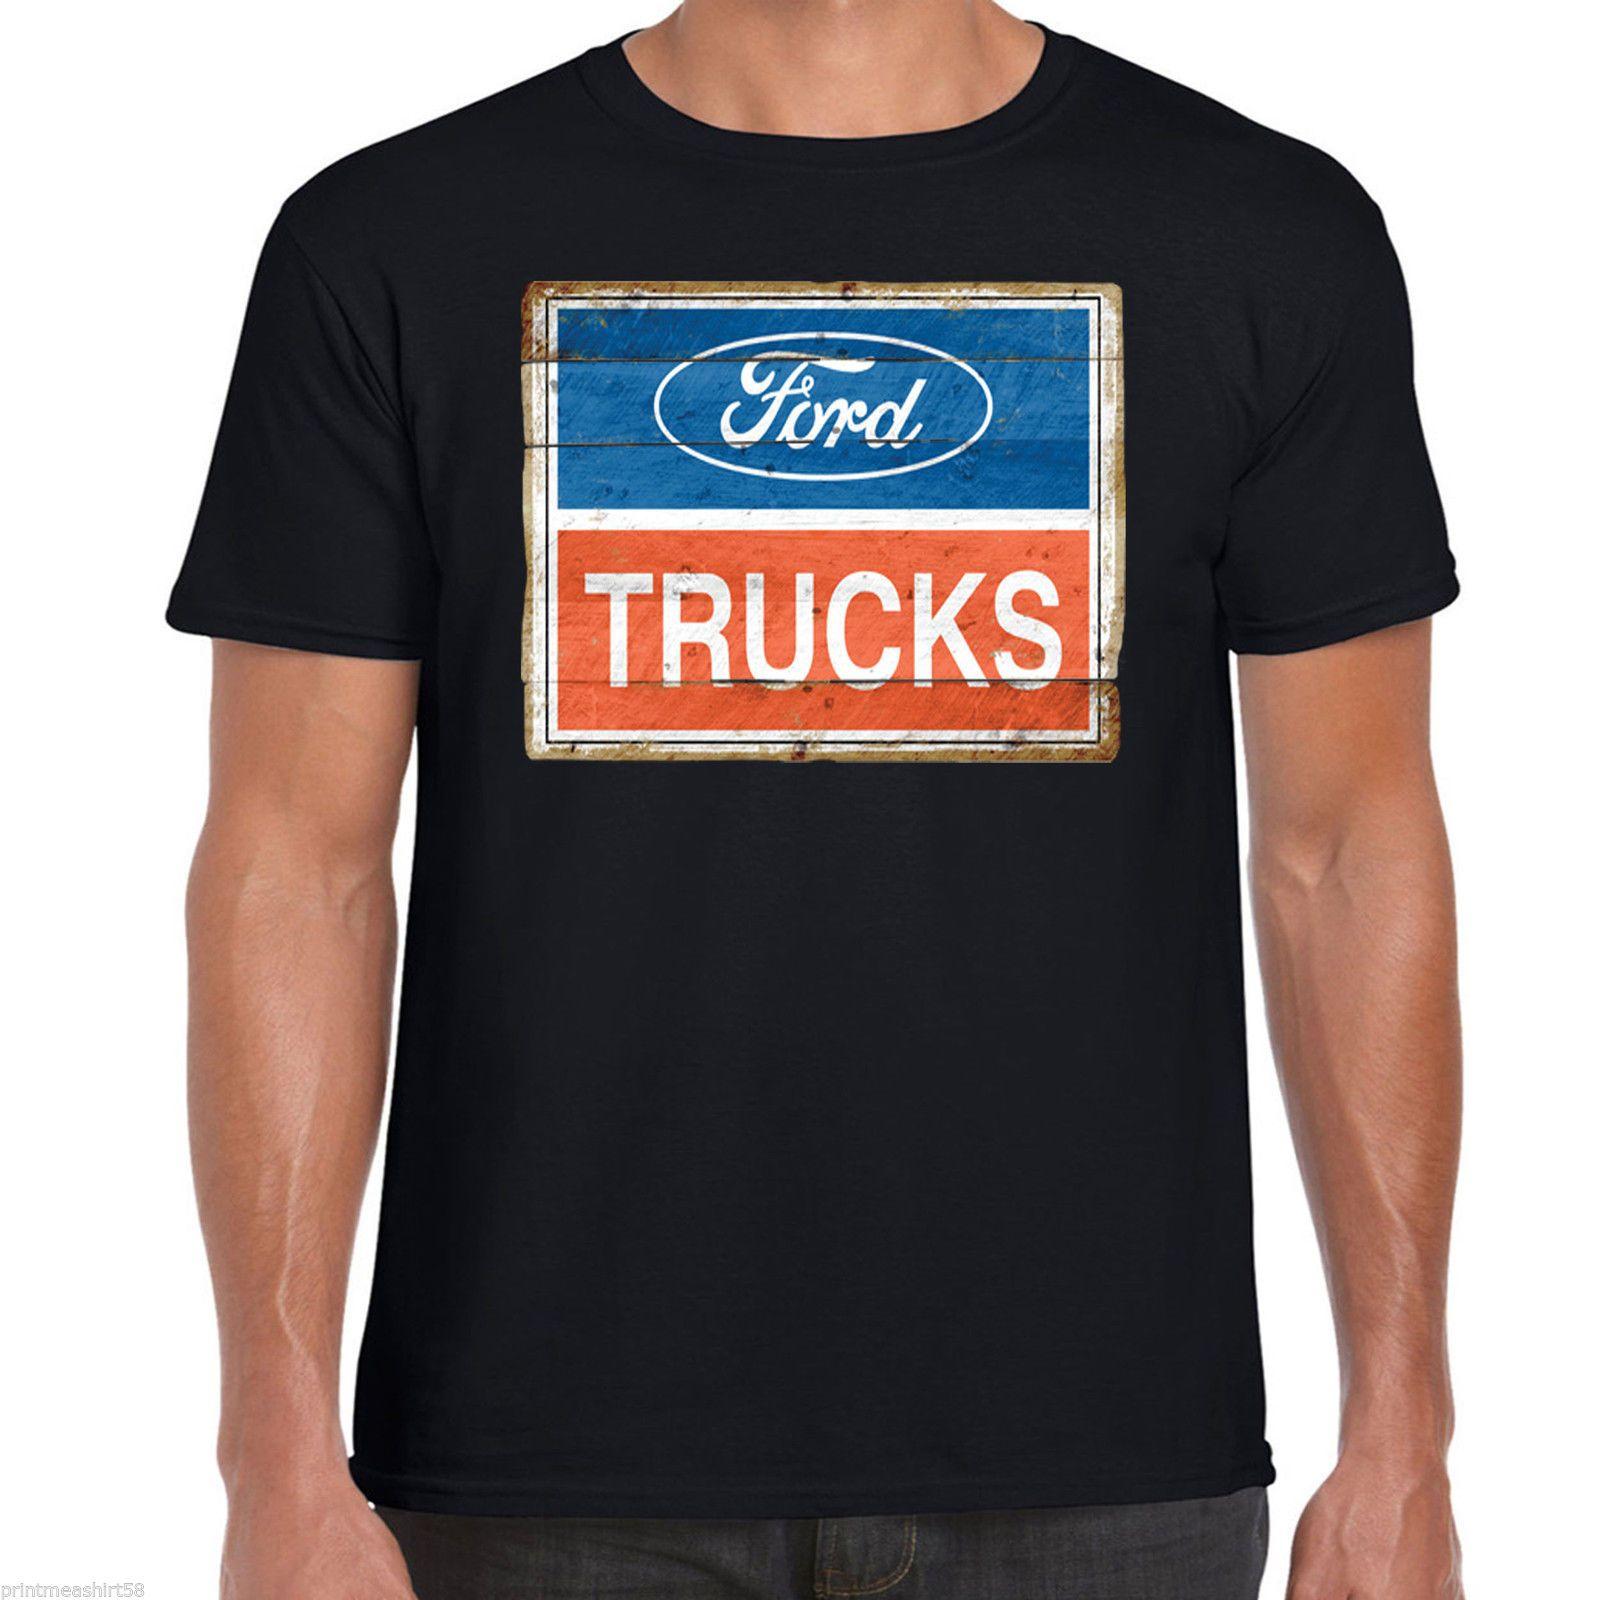 Vintage American Car Company Logo - Ford Trucks T Shirt Logo Classic Vintage American Pick Up Truck F150 ...